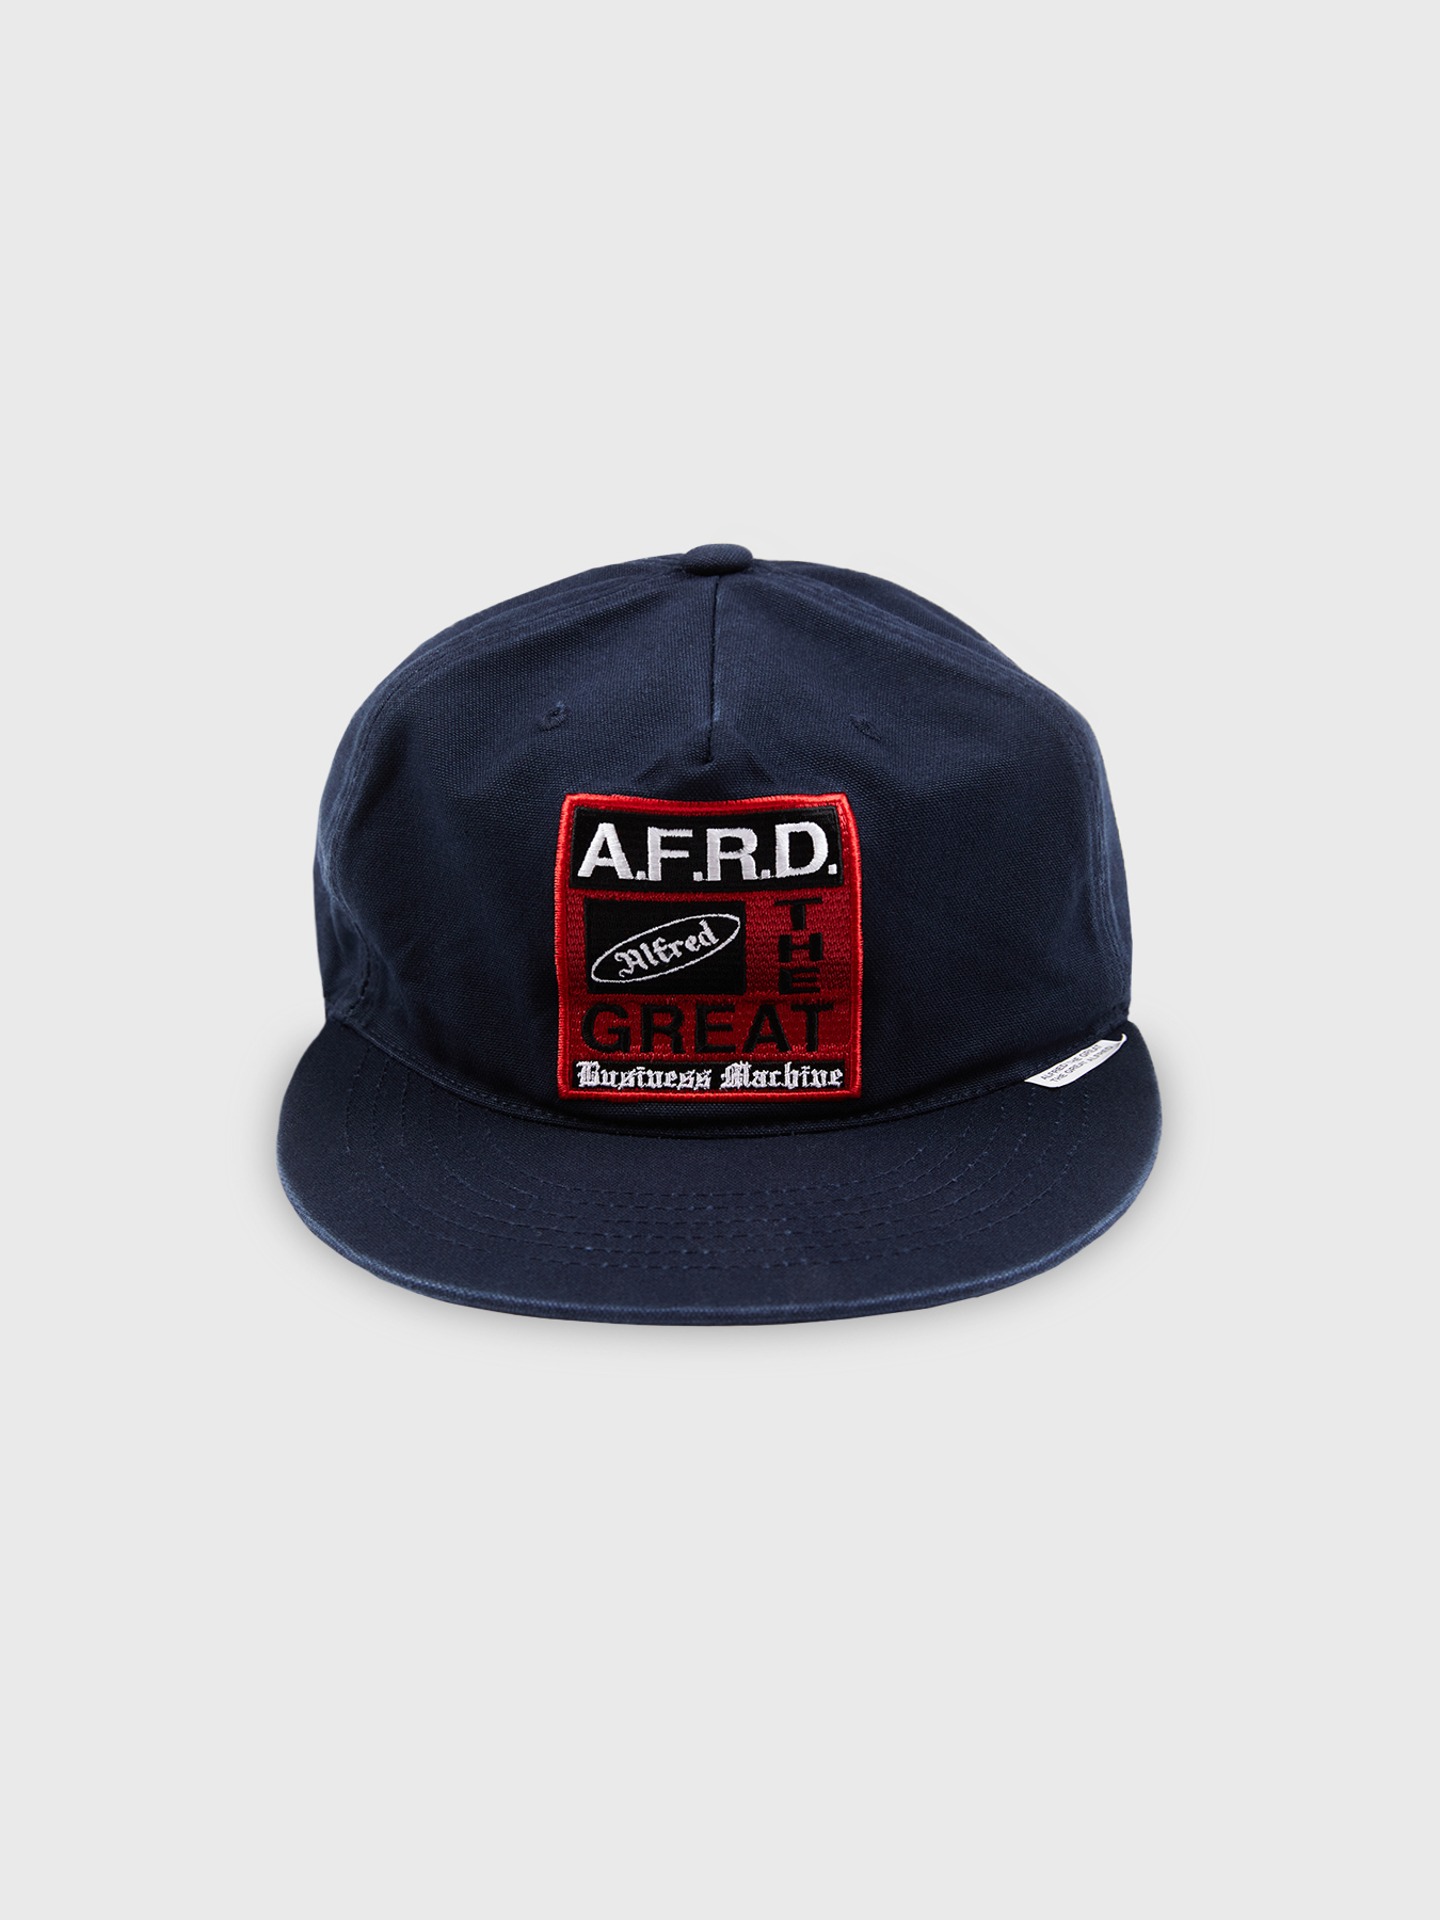 [Alfred] AFRD BUSINESS MACHINE CAP (DARK NAVY)